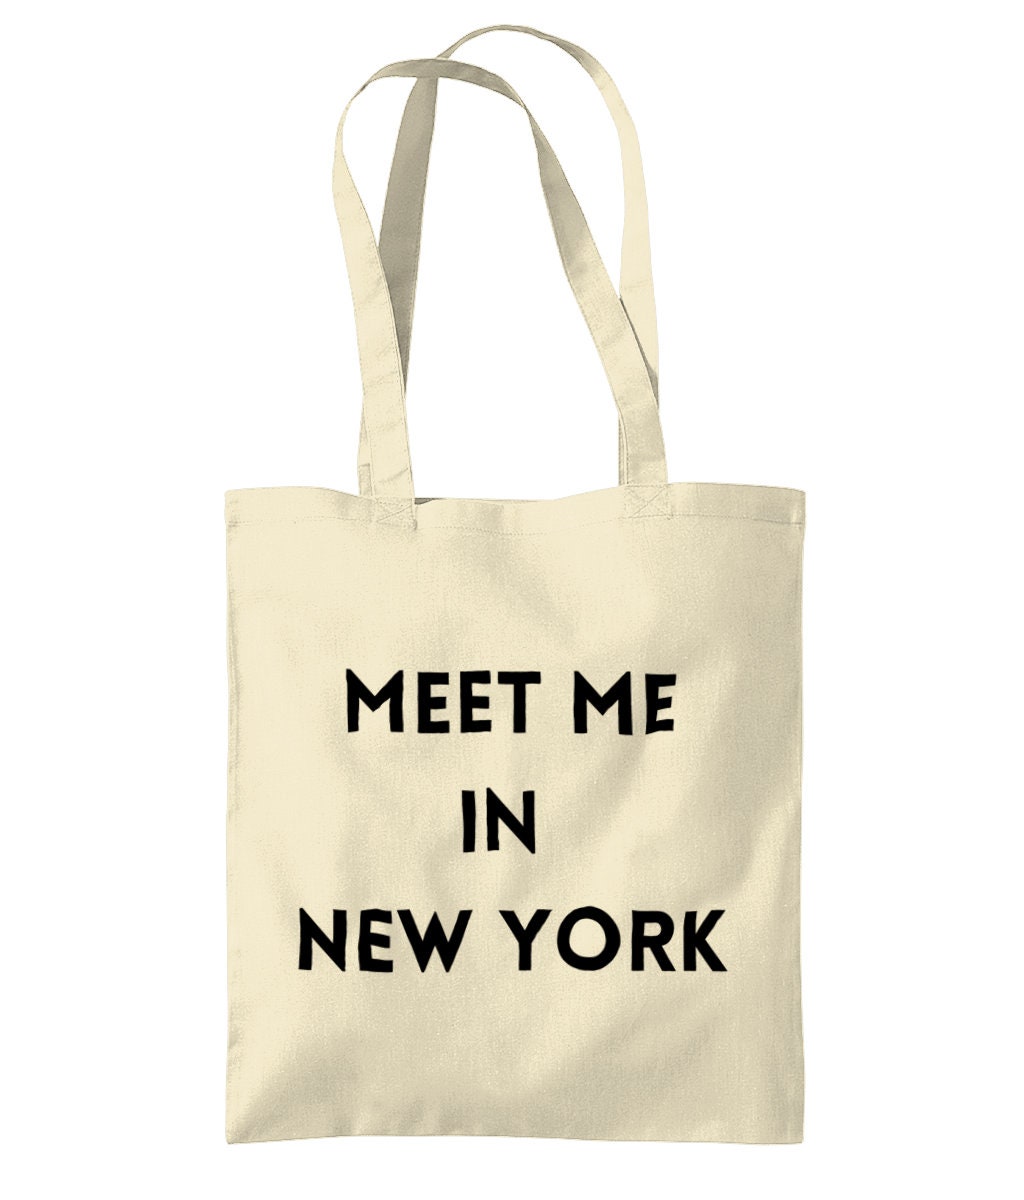 Сумка New York. Сумка Нью Йорк. Jones New York сумка. Vera New York сумки.